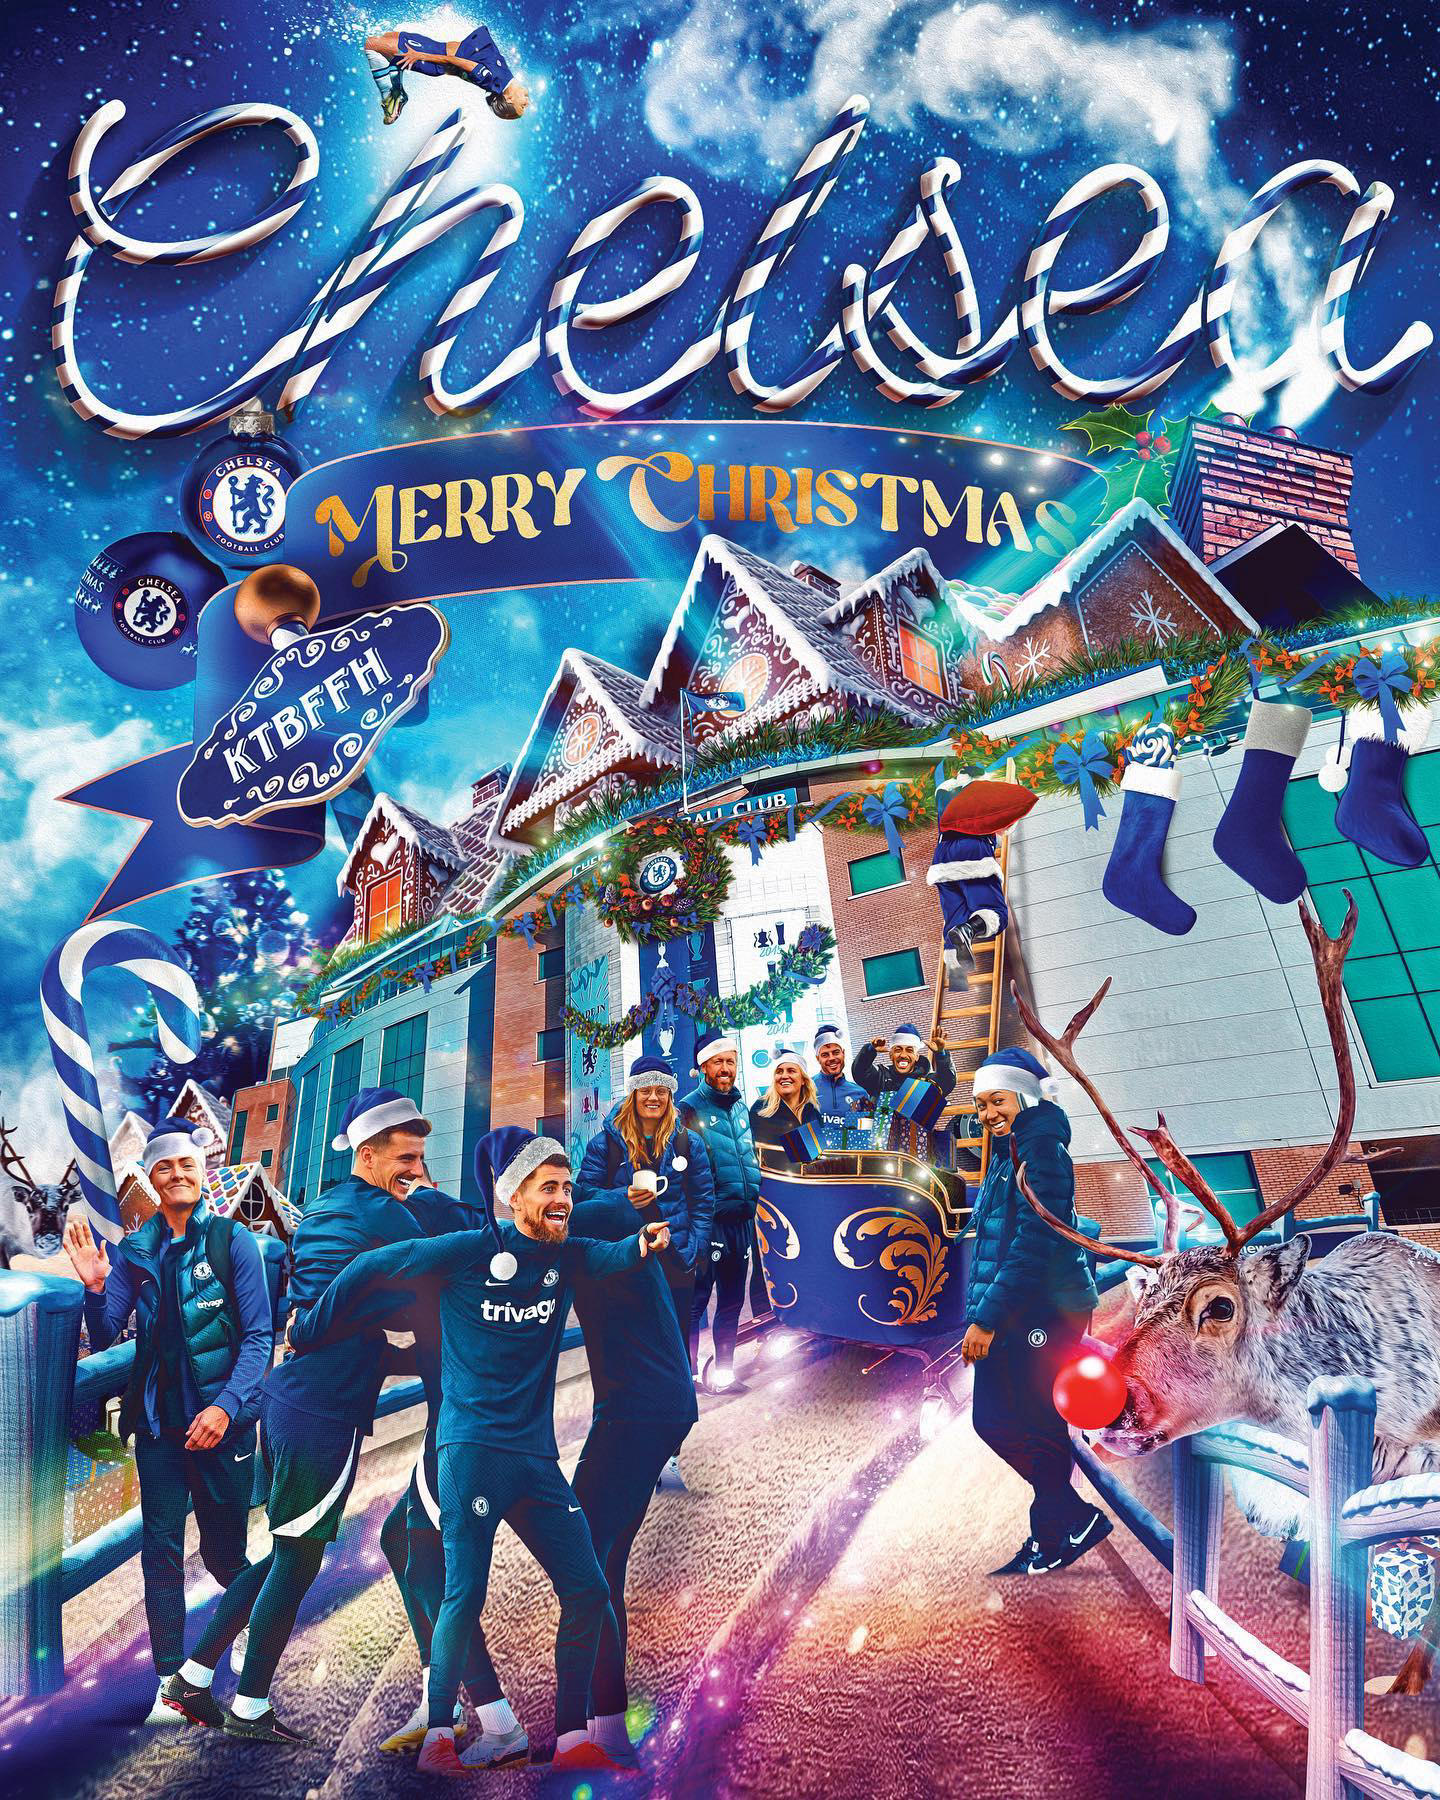 Chelsea FC - Have a Blue Christmas, Chelsea fans